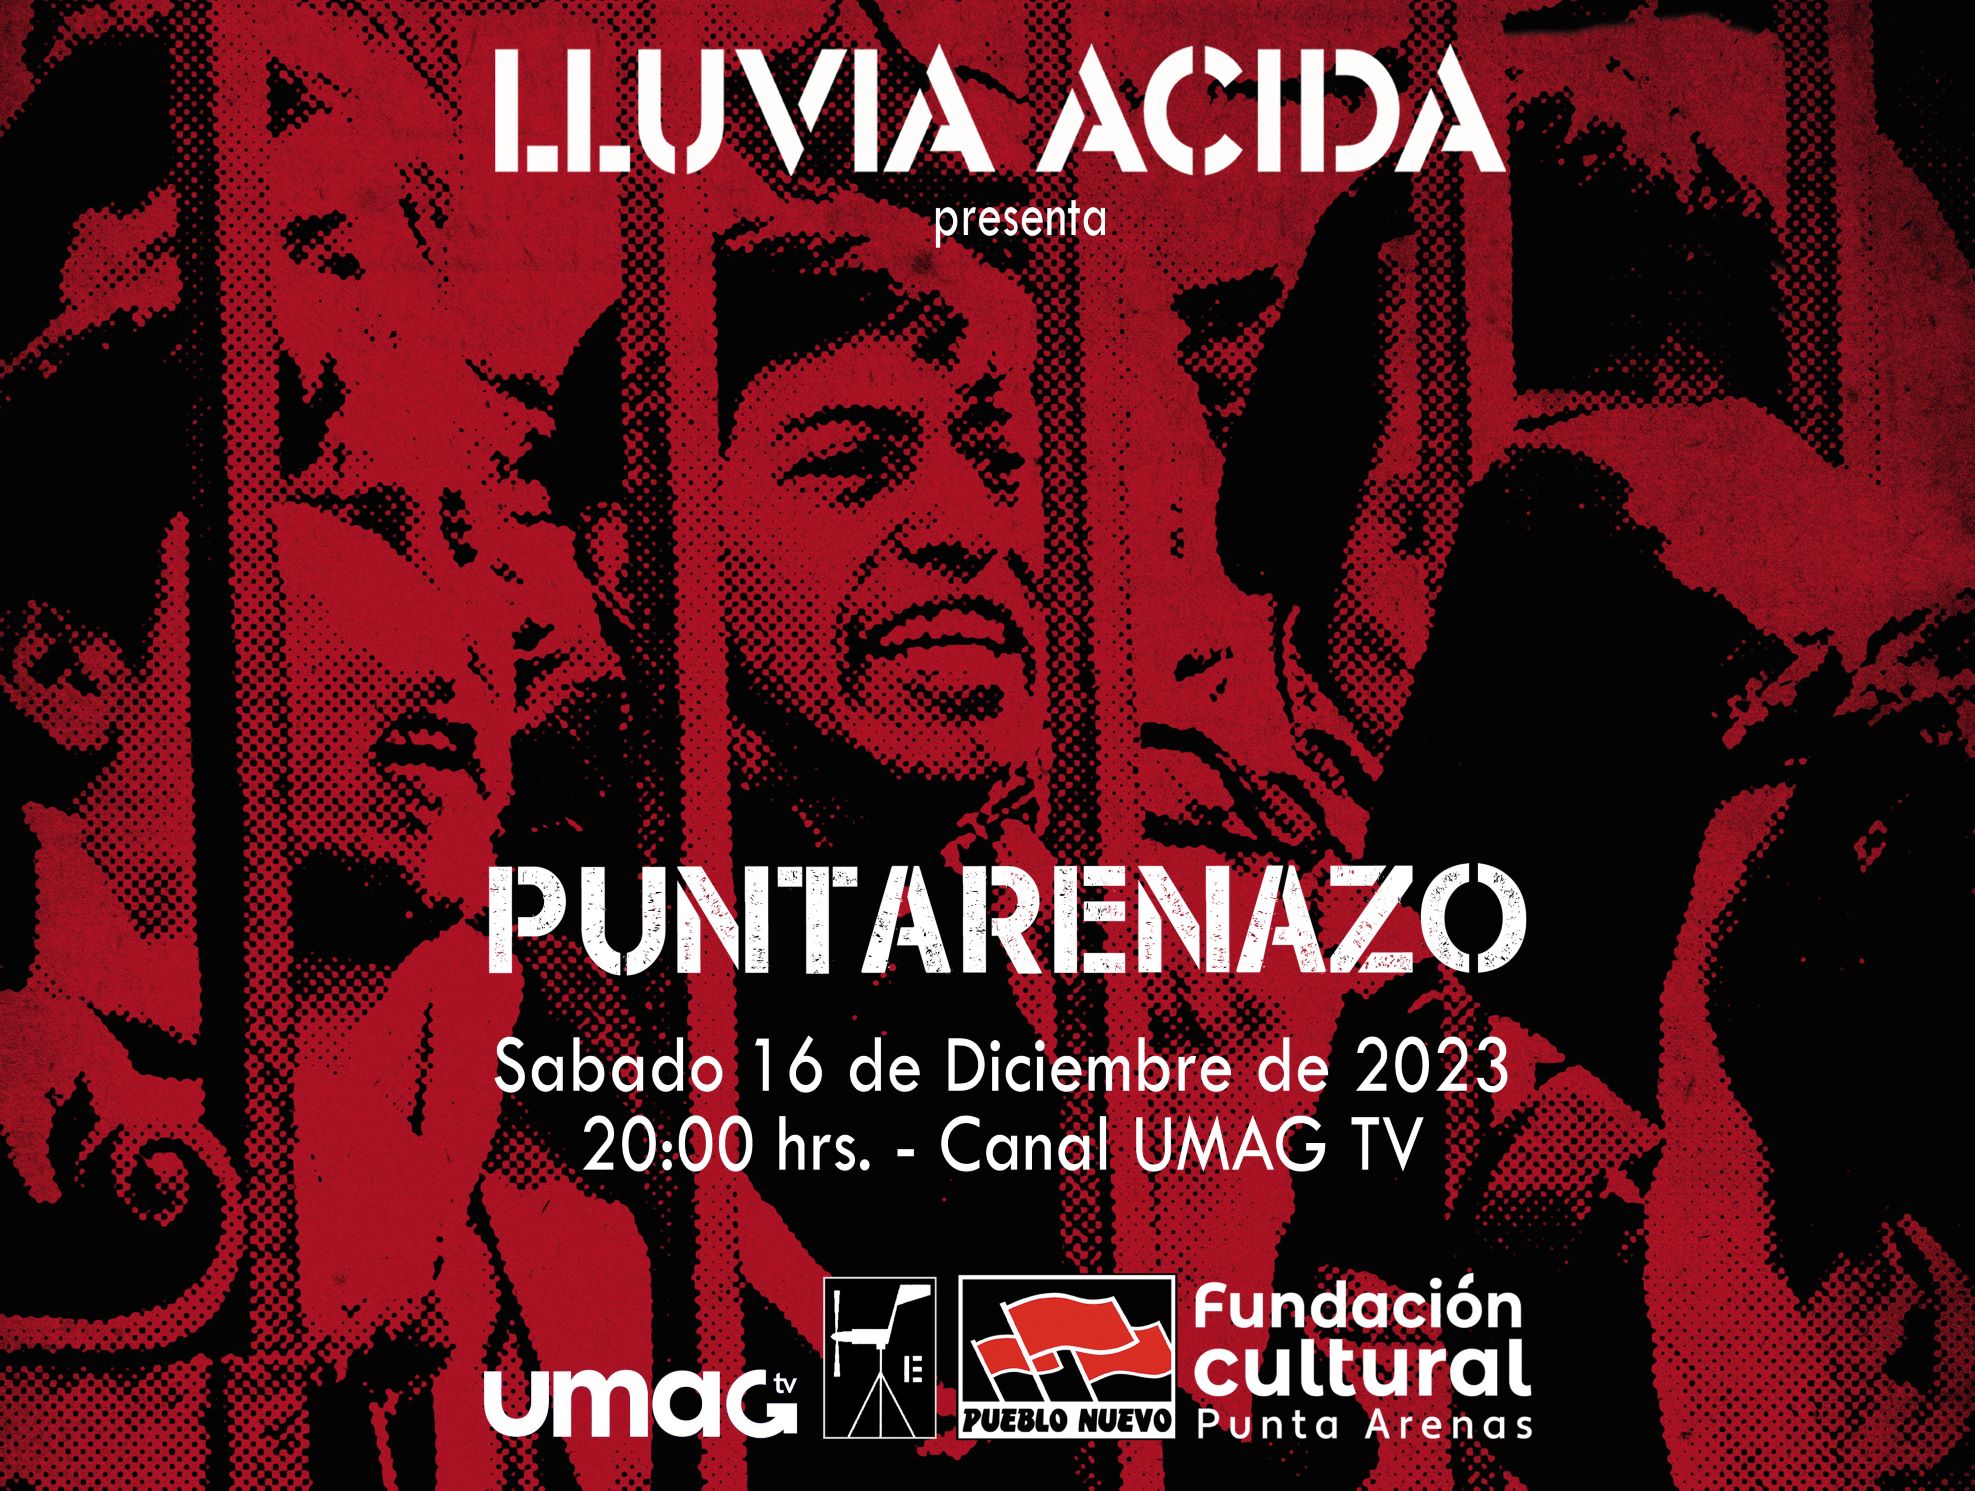 Canal de TV UMAG TV estrenará “Puntarenazo”, la nueva obra del dúo magallánico Lluvia Ácida